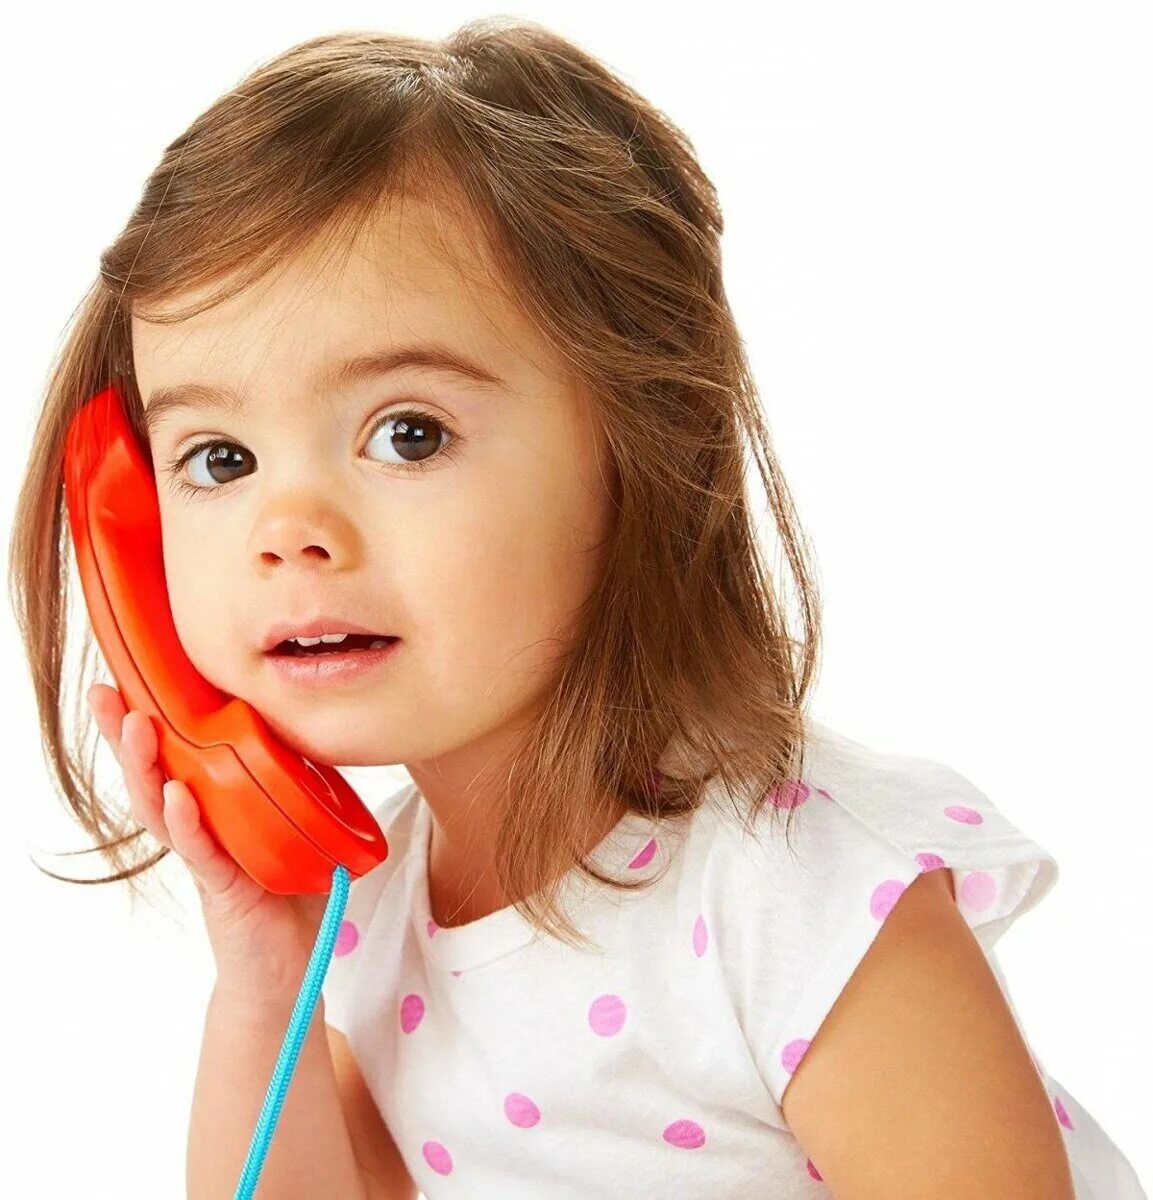 Программа говорят дети. Ребенок говорит. Девочка разговаривает по телефону. Ребенок говорит по телефону. Разговор с ребенком.